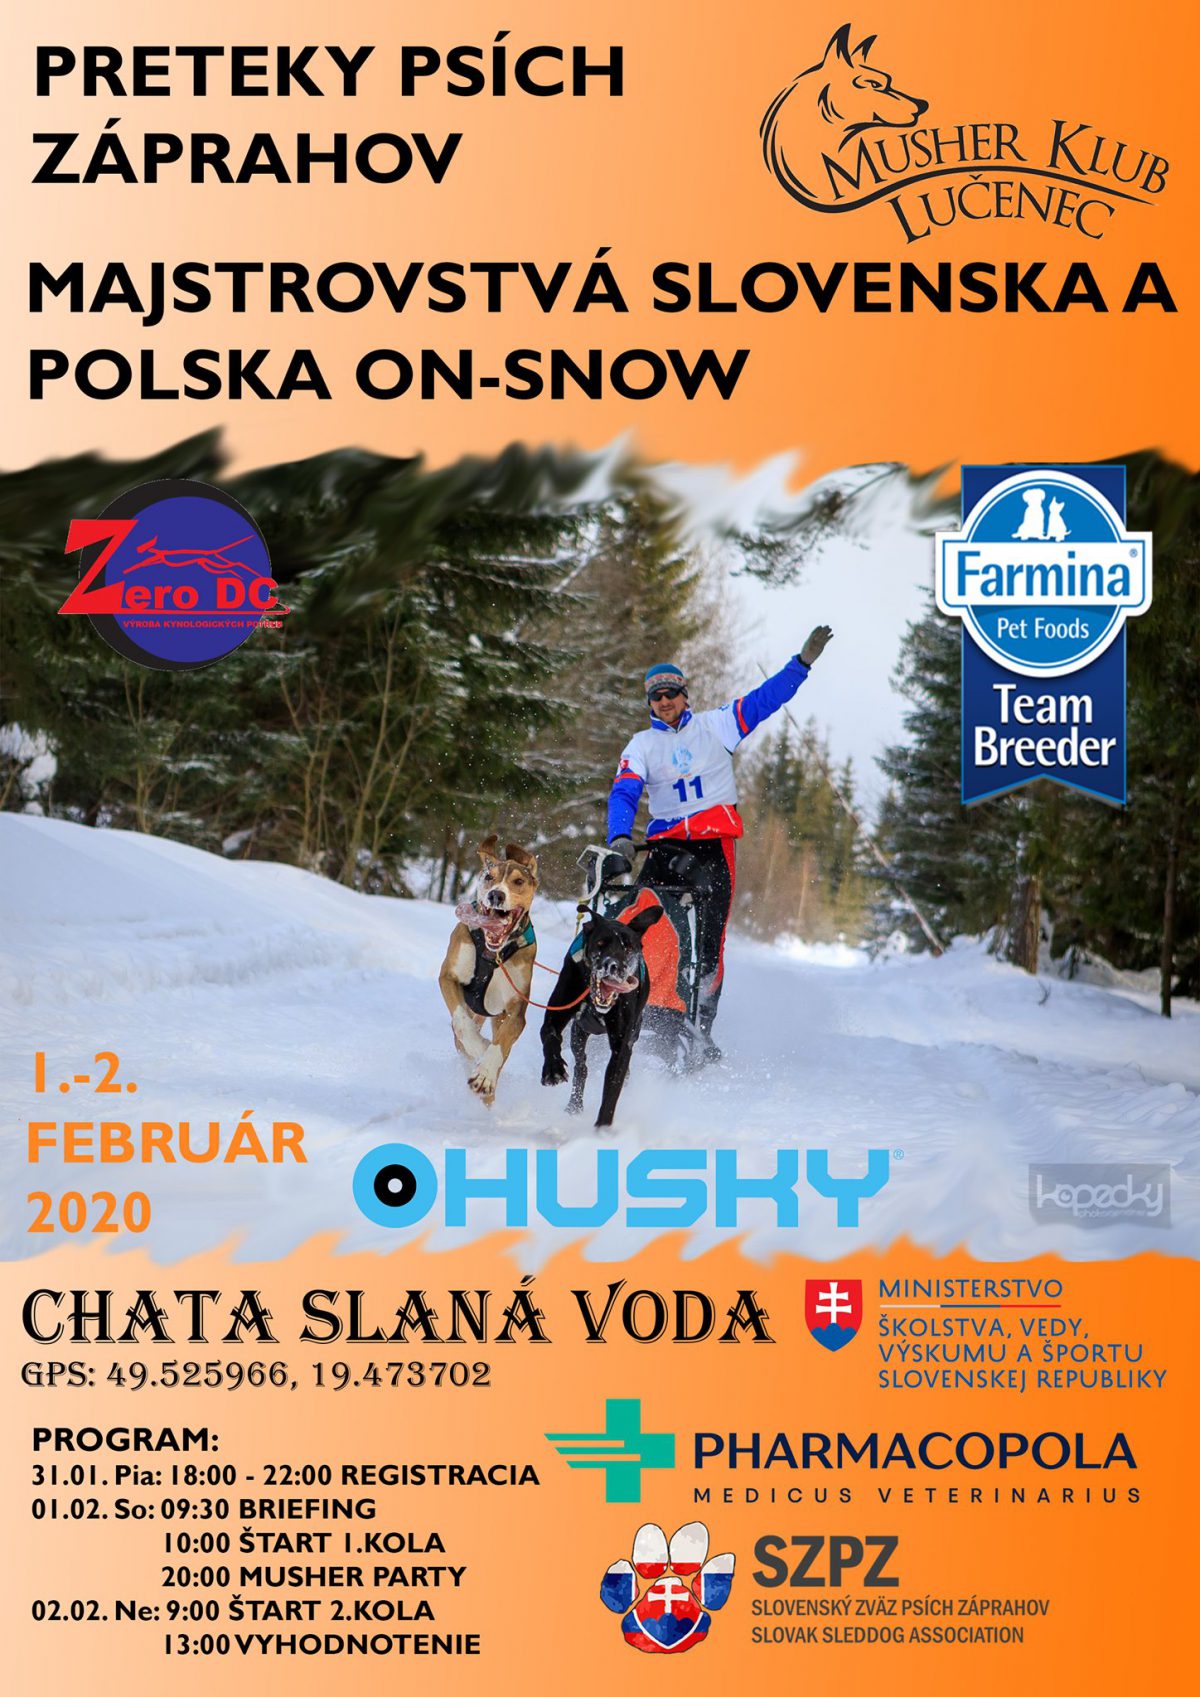 Preteky psch zprahov Oravsk Polhora 2020 - majstrovstv Slovenska a Poska on-snow